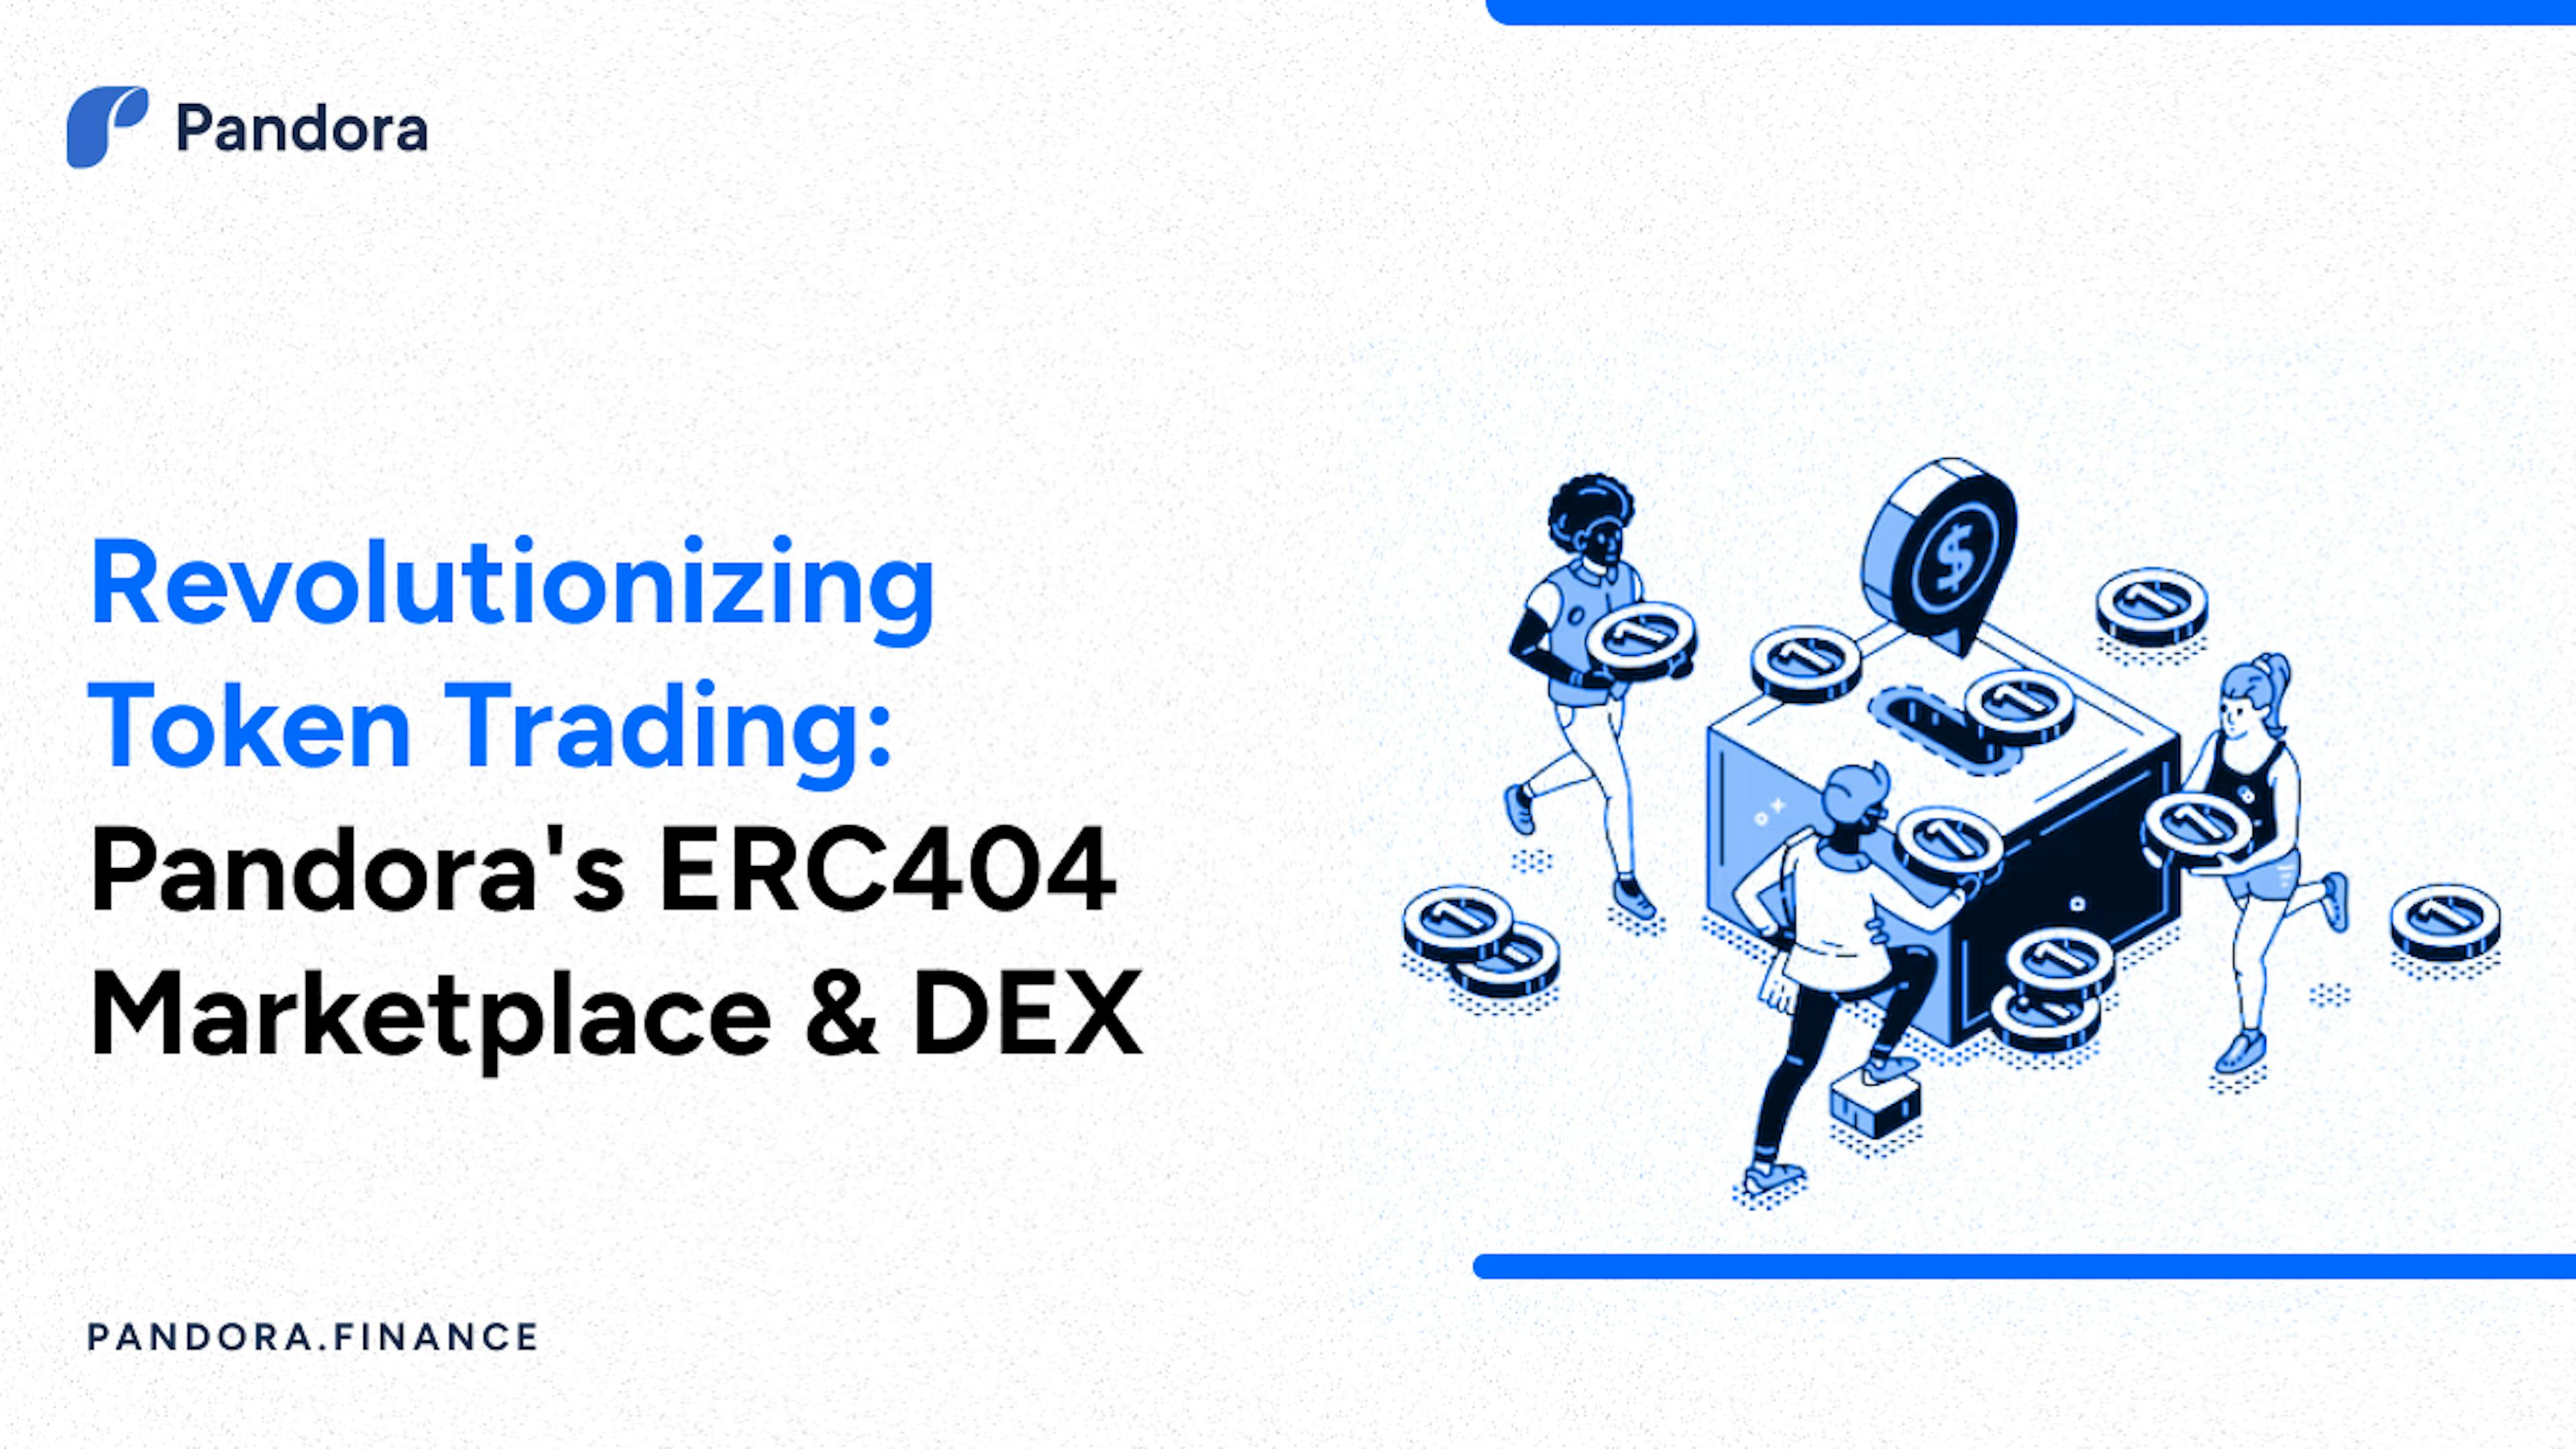 featured image - Thị trường ERC404 & DEX trọn gói đầu tiên trên thế giới được ra mắt bởi Pandora Finance